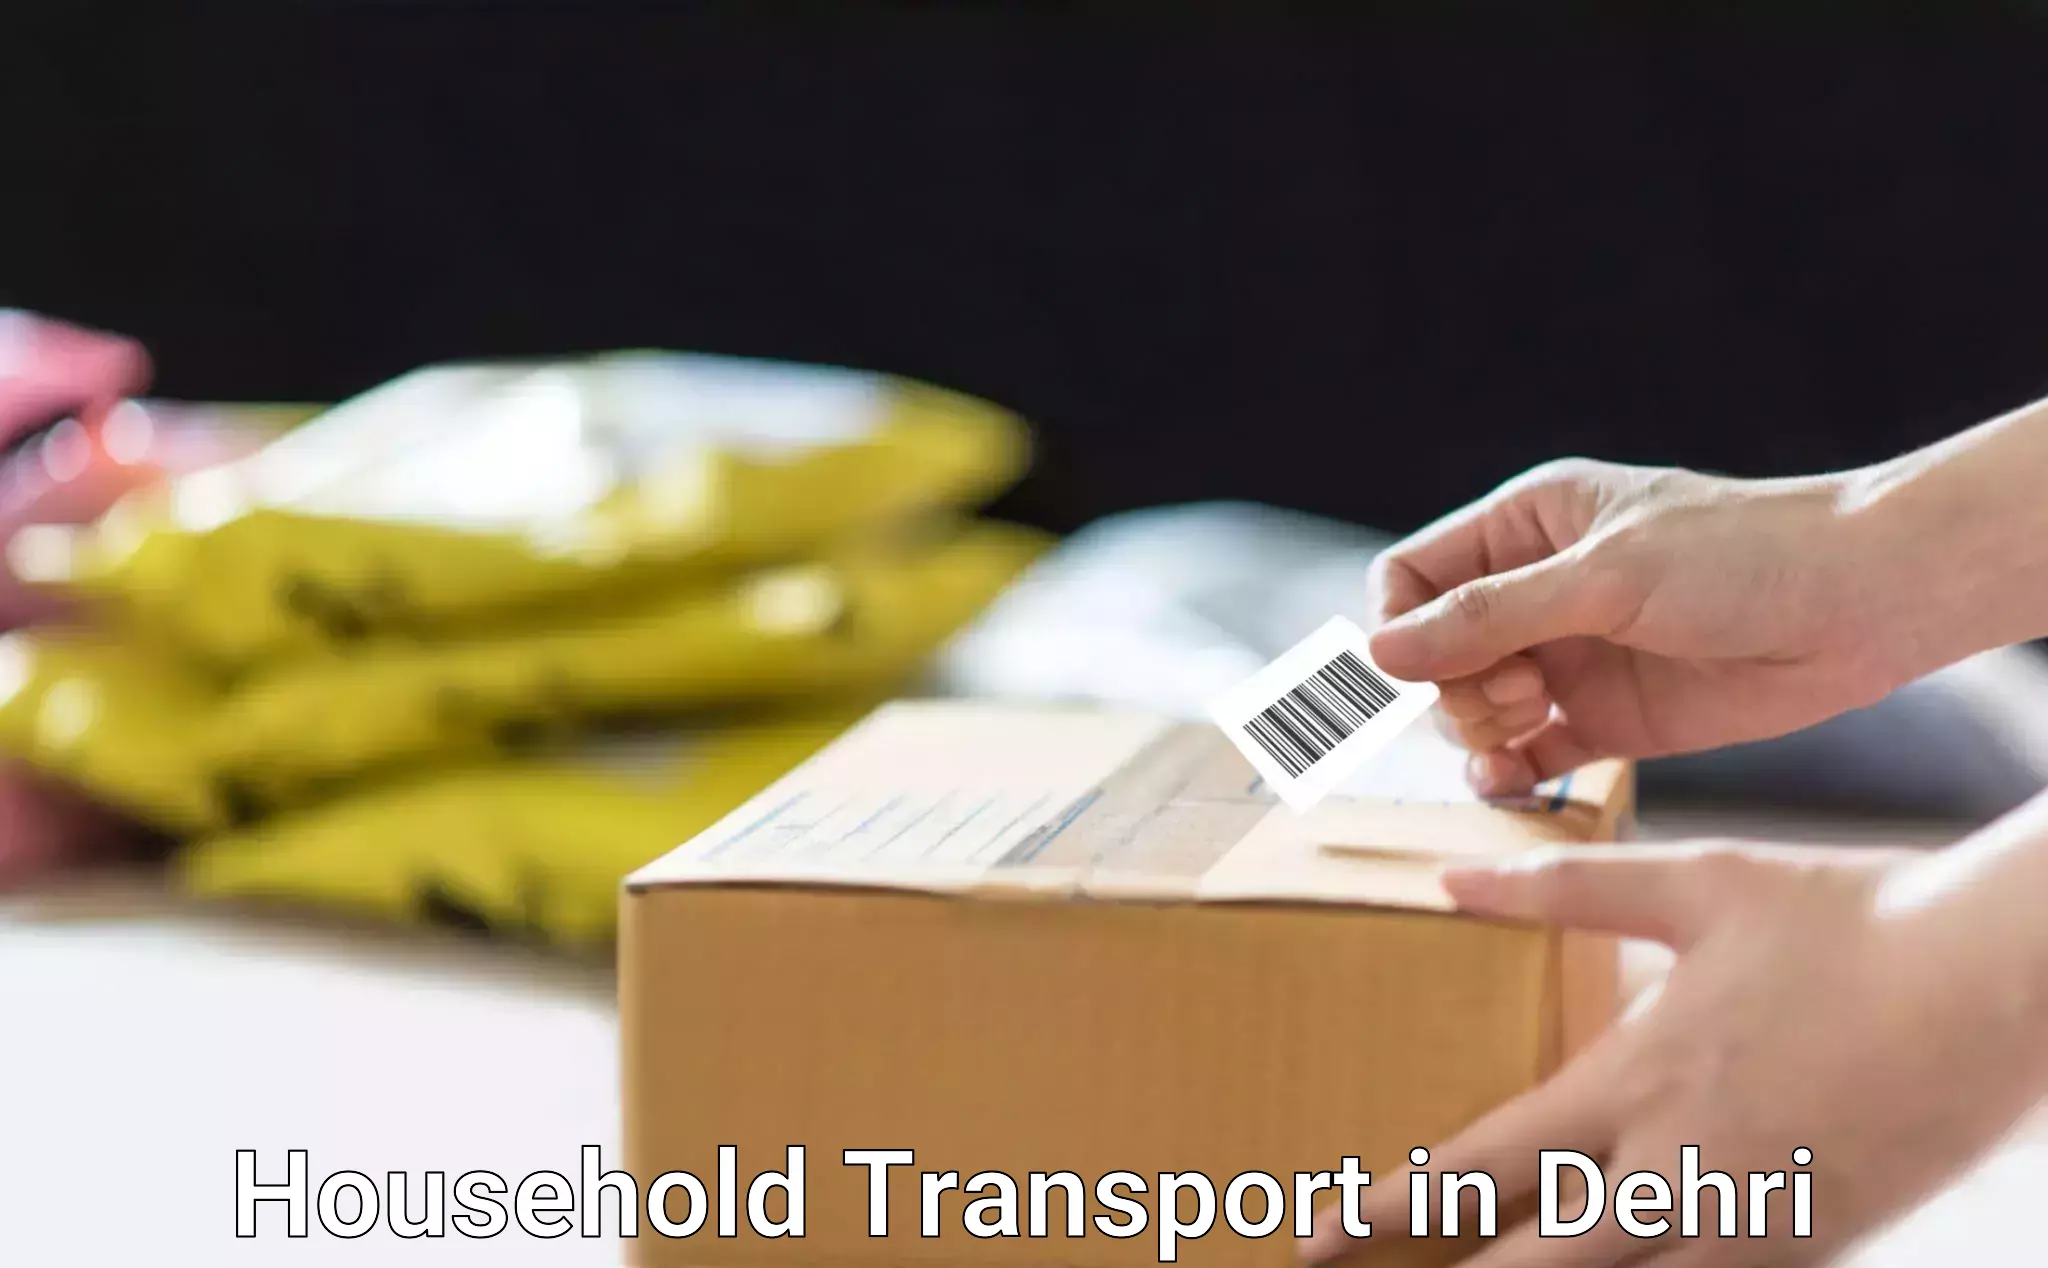 Nationwide furniture transport in Dehri